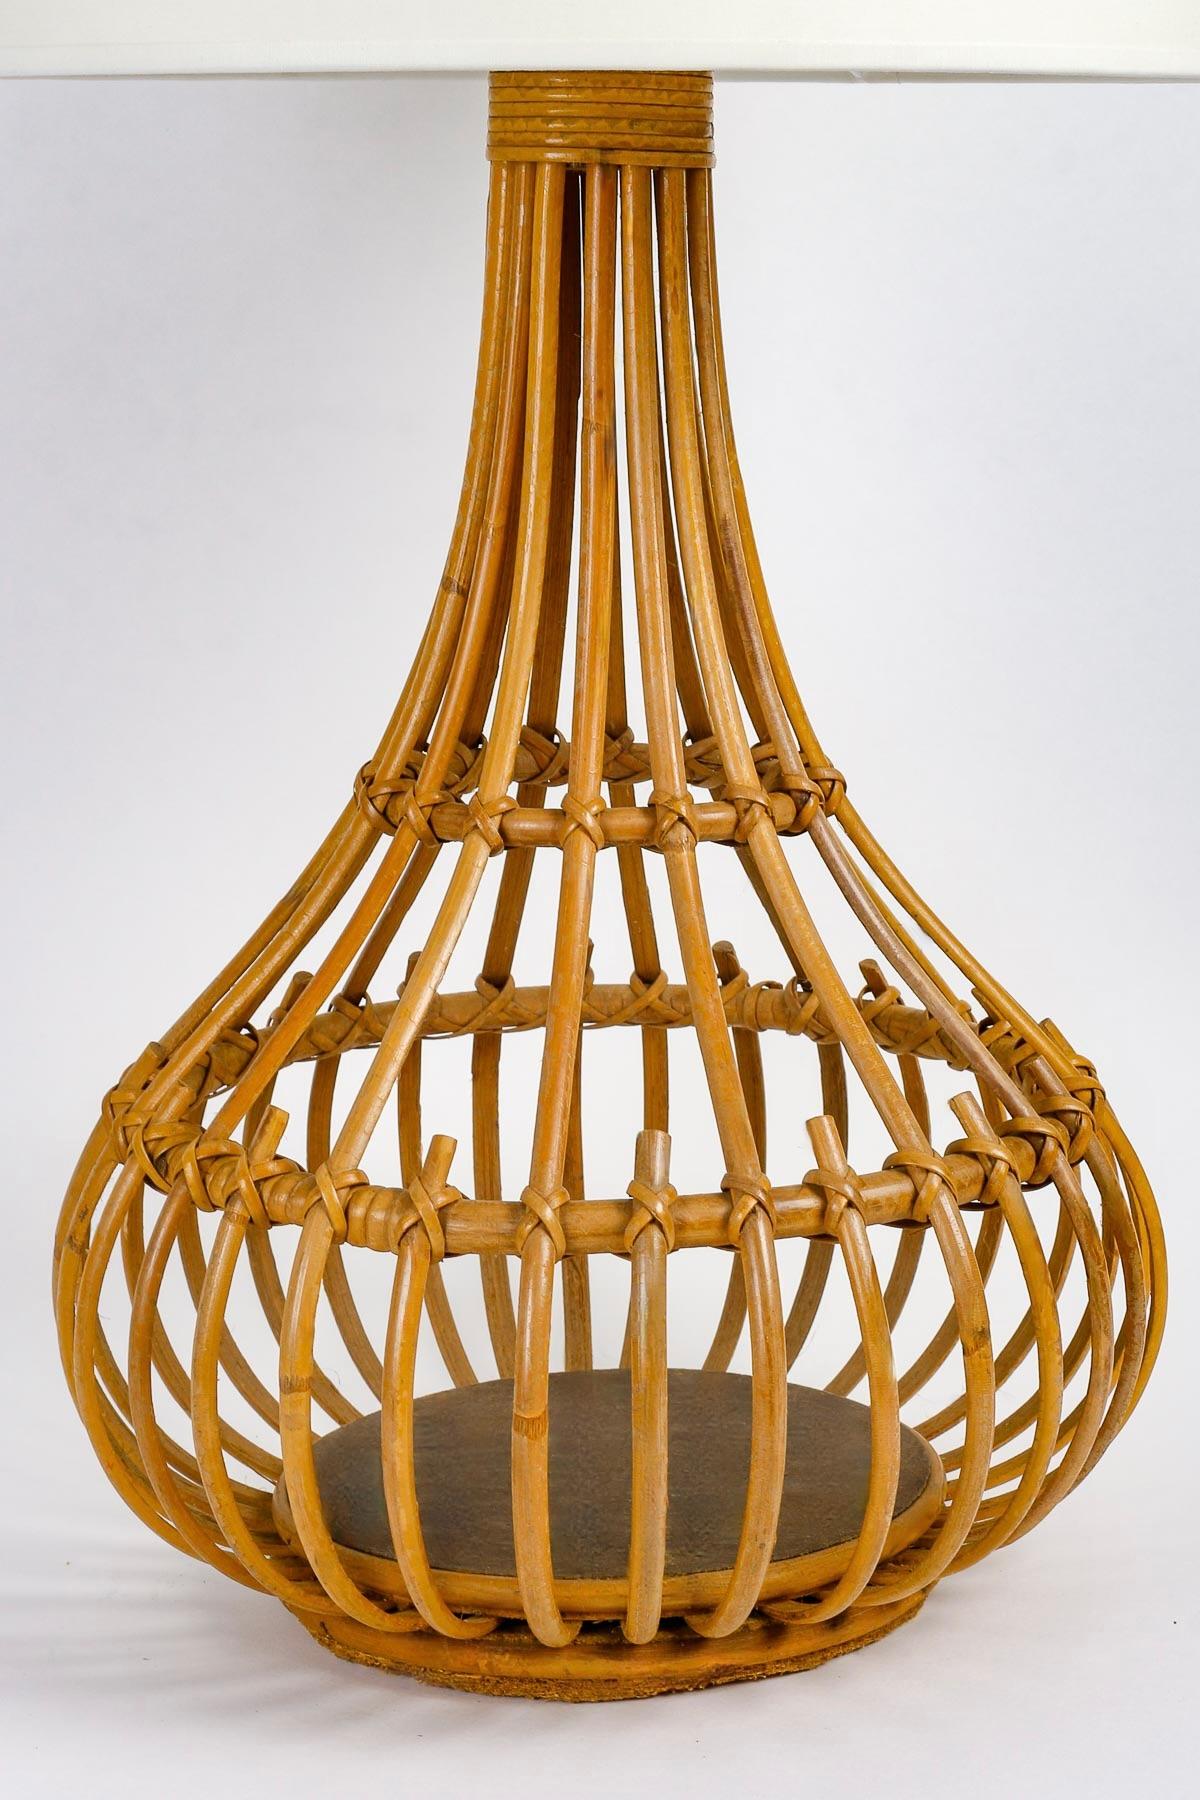 La lampe, en forme de vase à col, est composée de tiges de bambou placées verticalement et maintenues par des cercles de rotin de différentes tailles placés horizontalement à différentes hauteurs, reliés par des fils de rotin.
L'ensemble repose sur